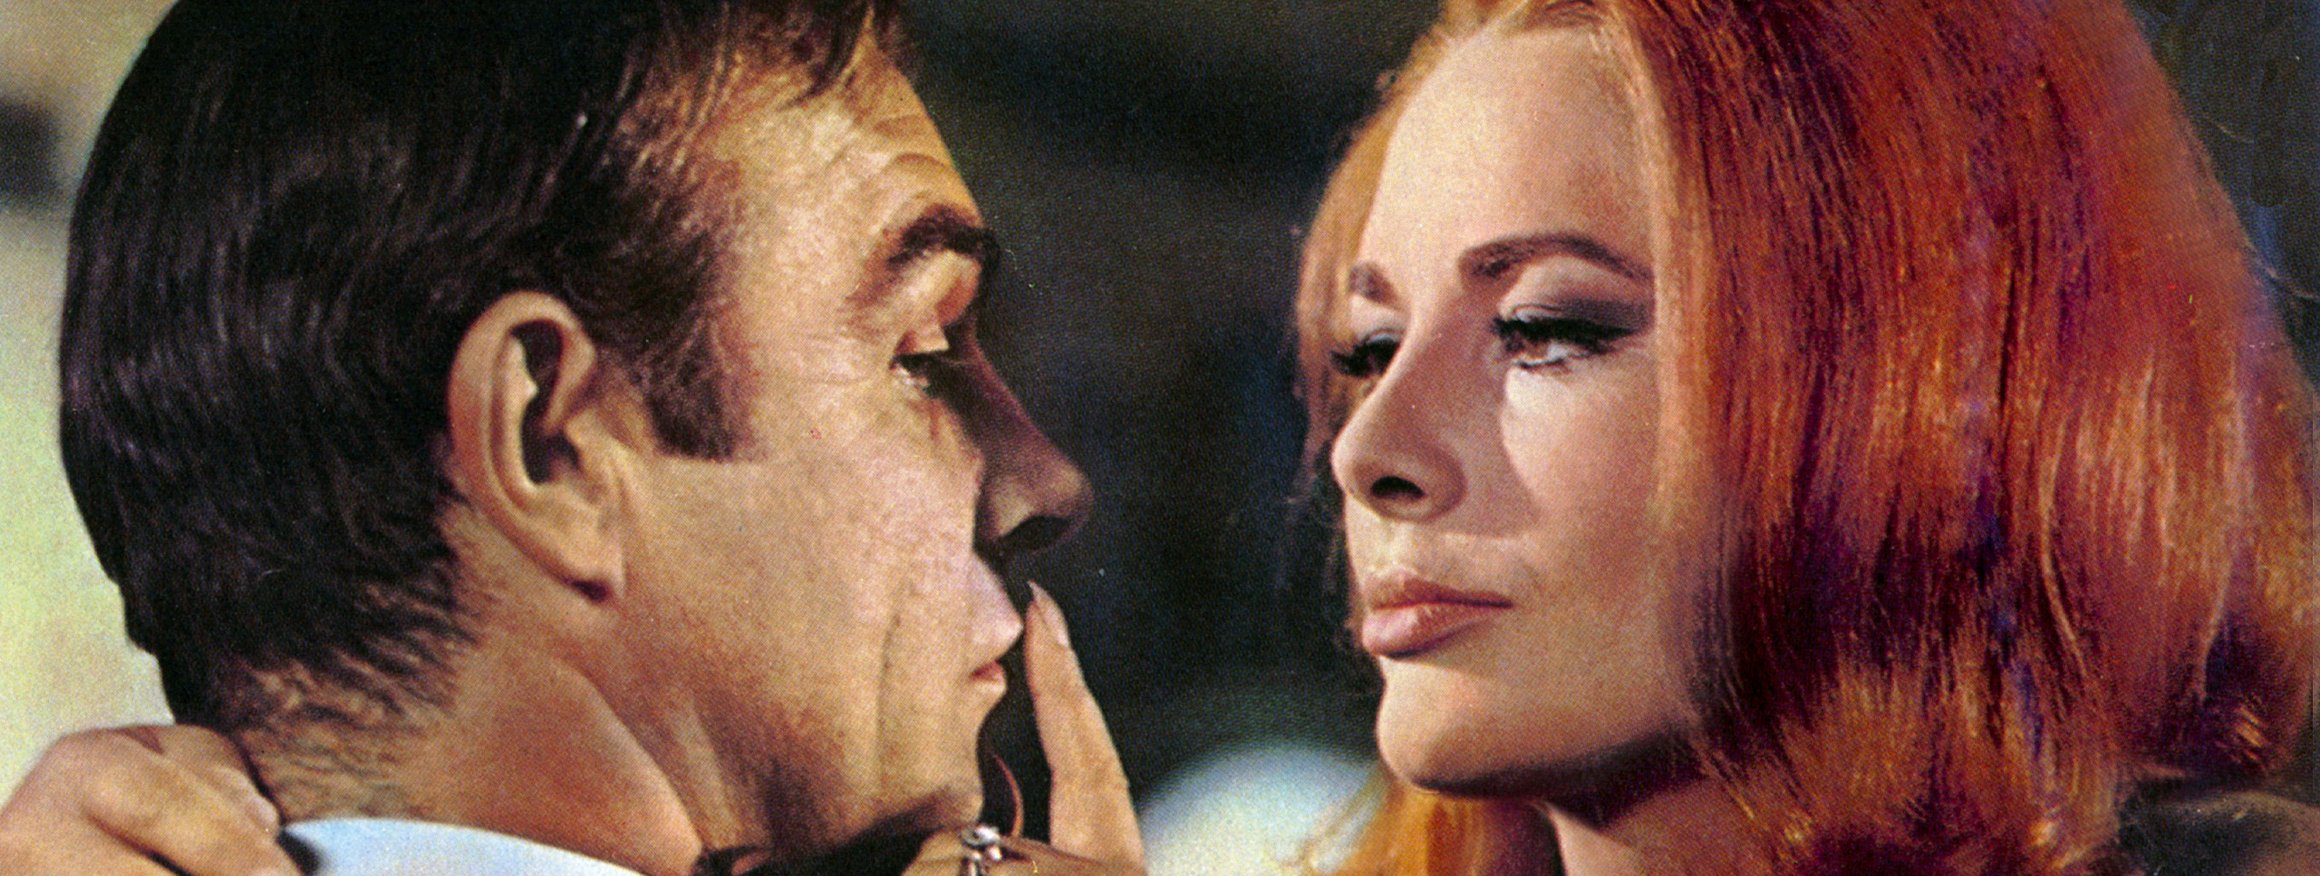 Der James Bond-Darsteller Sean Connery zusammen mit der Schauspielerin Karin Dor